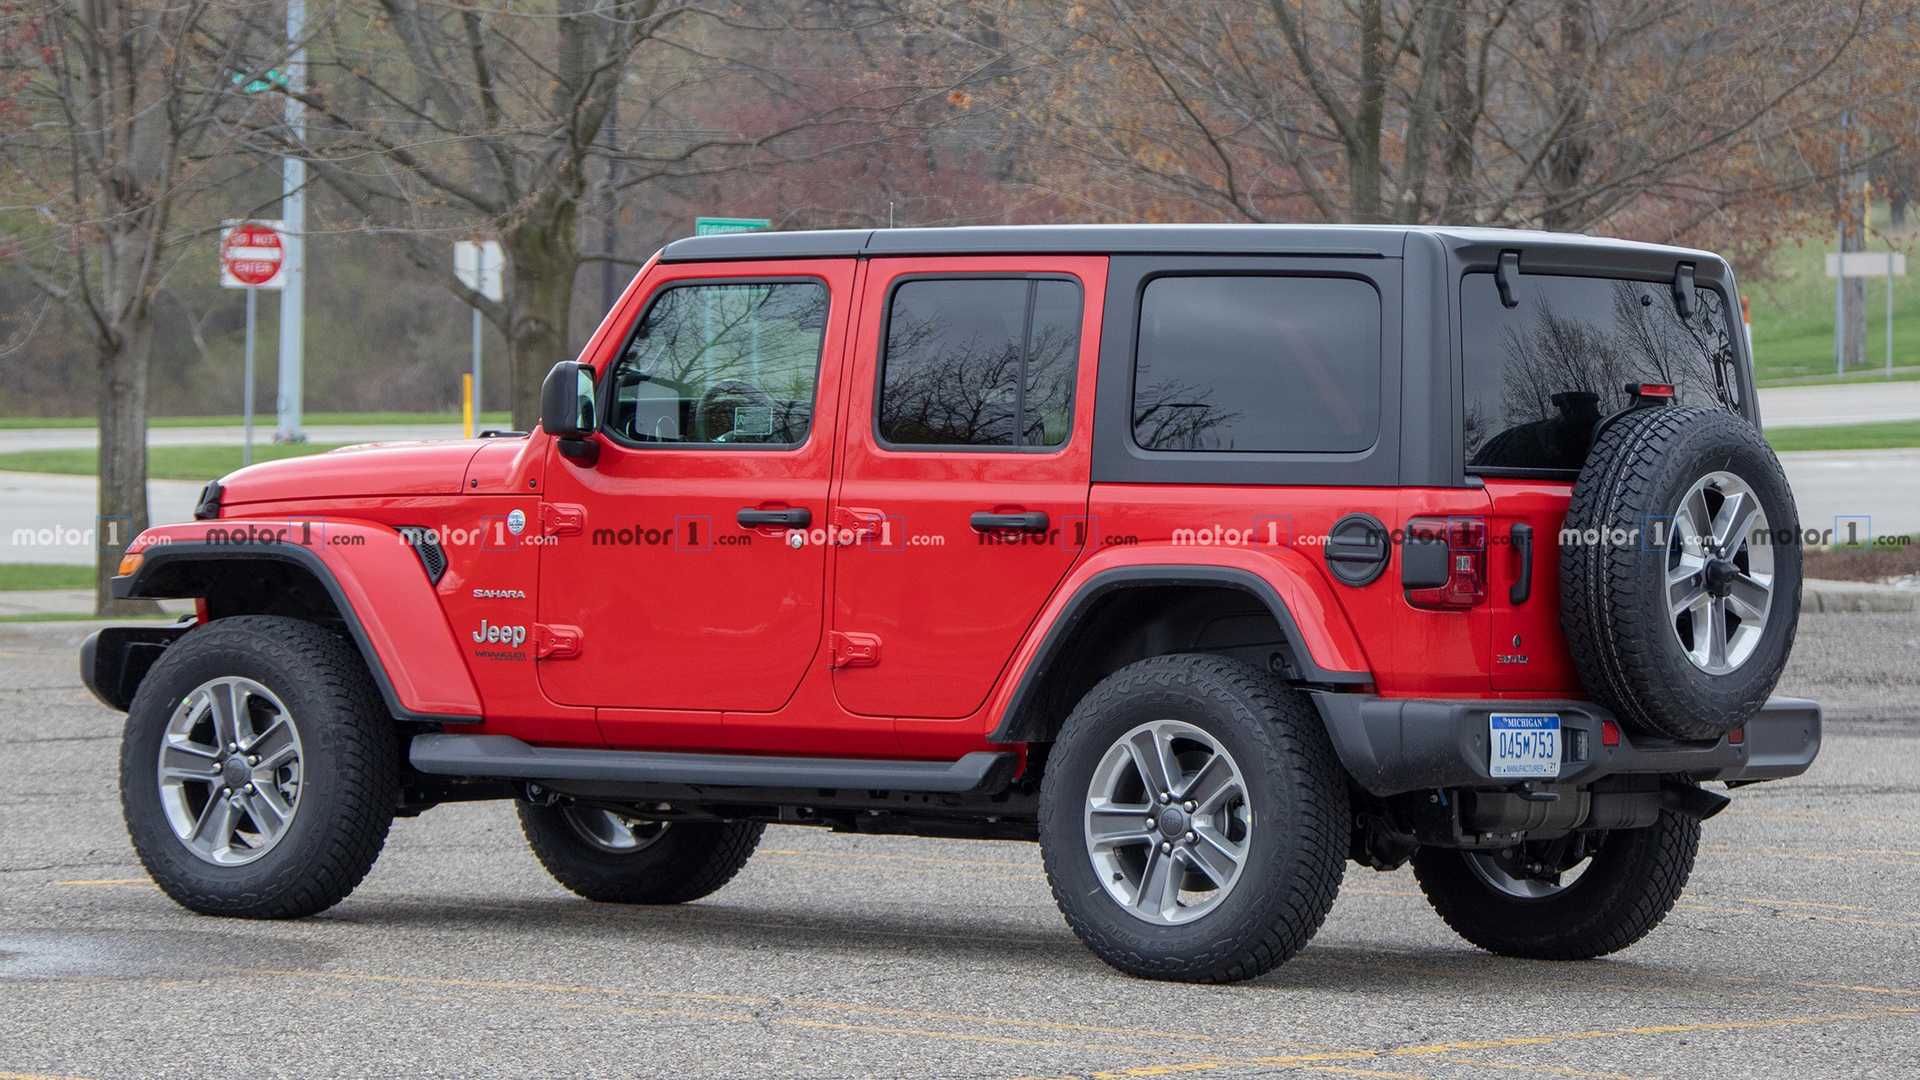 2010款Jeep牧马人柴油版谍照曝光 新车有望年底发布